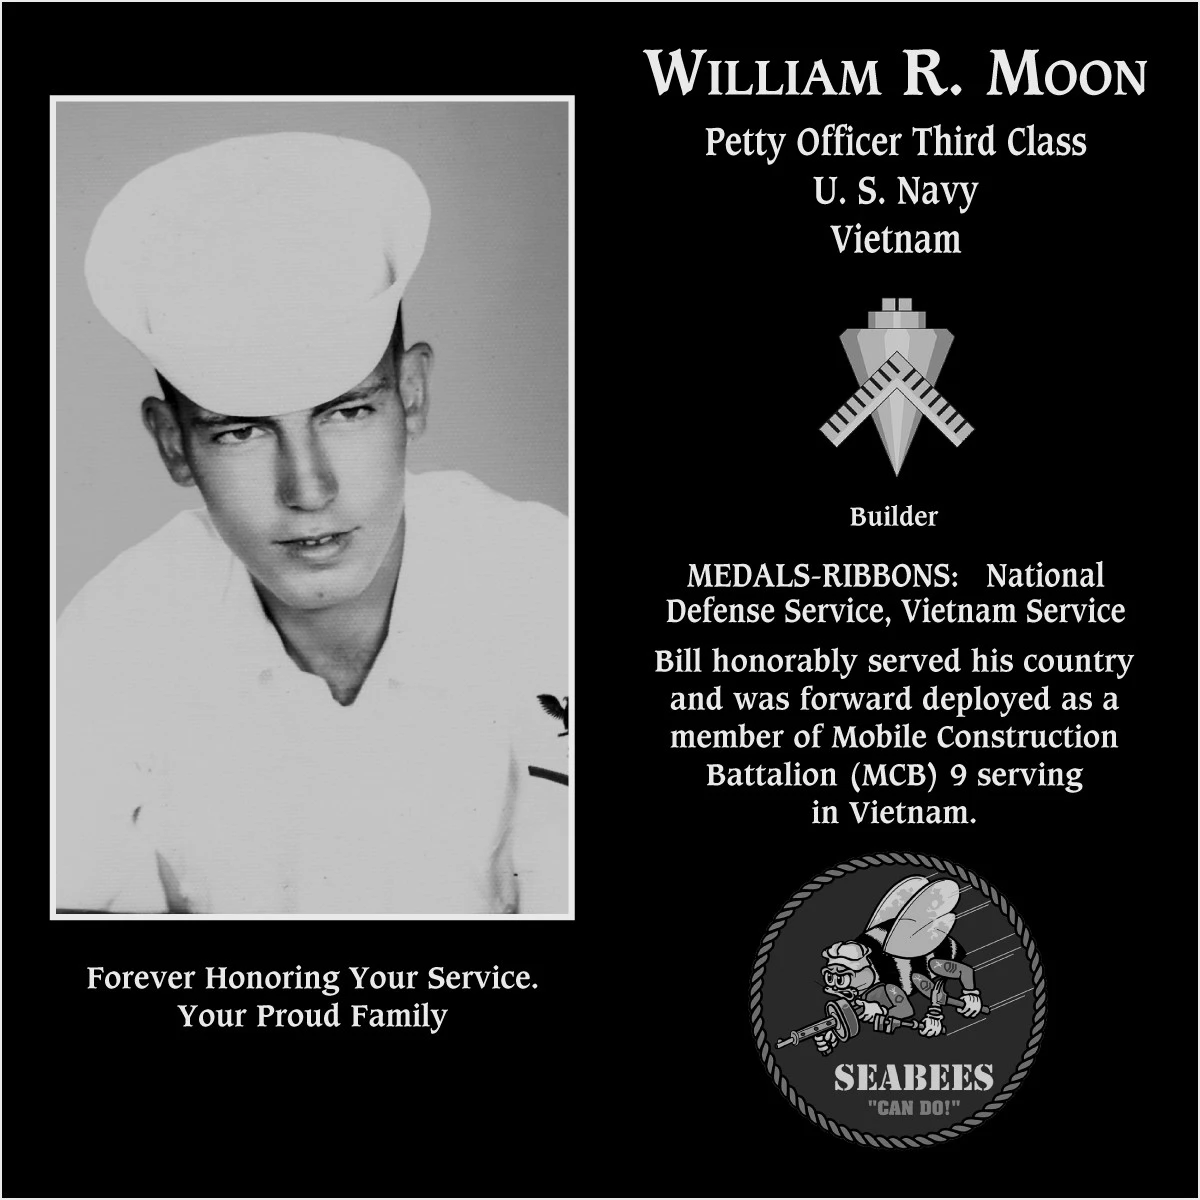 William R. Moon